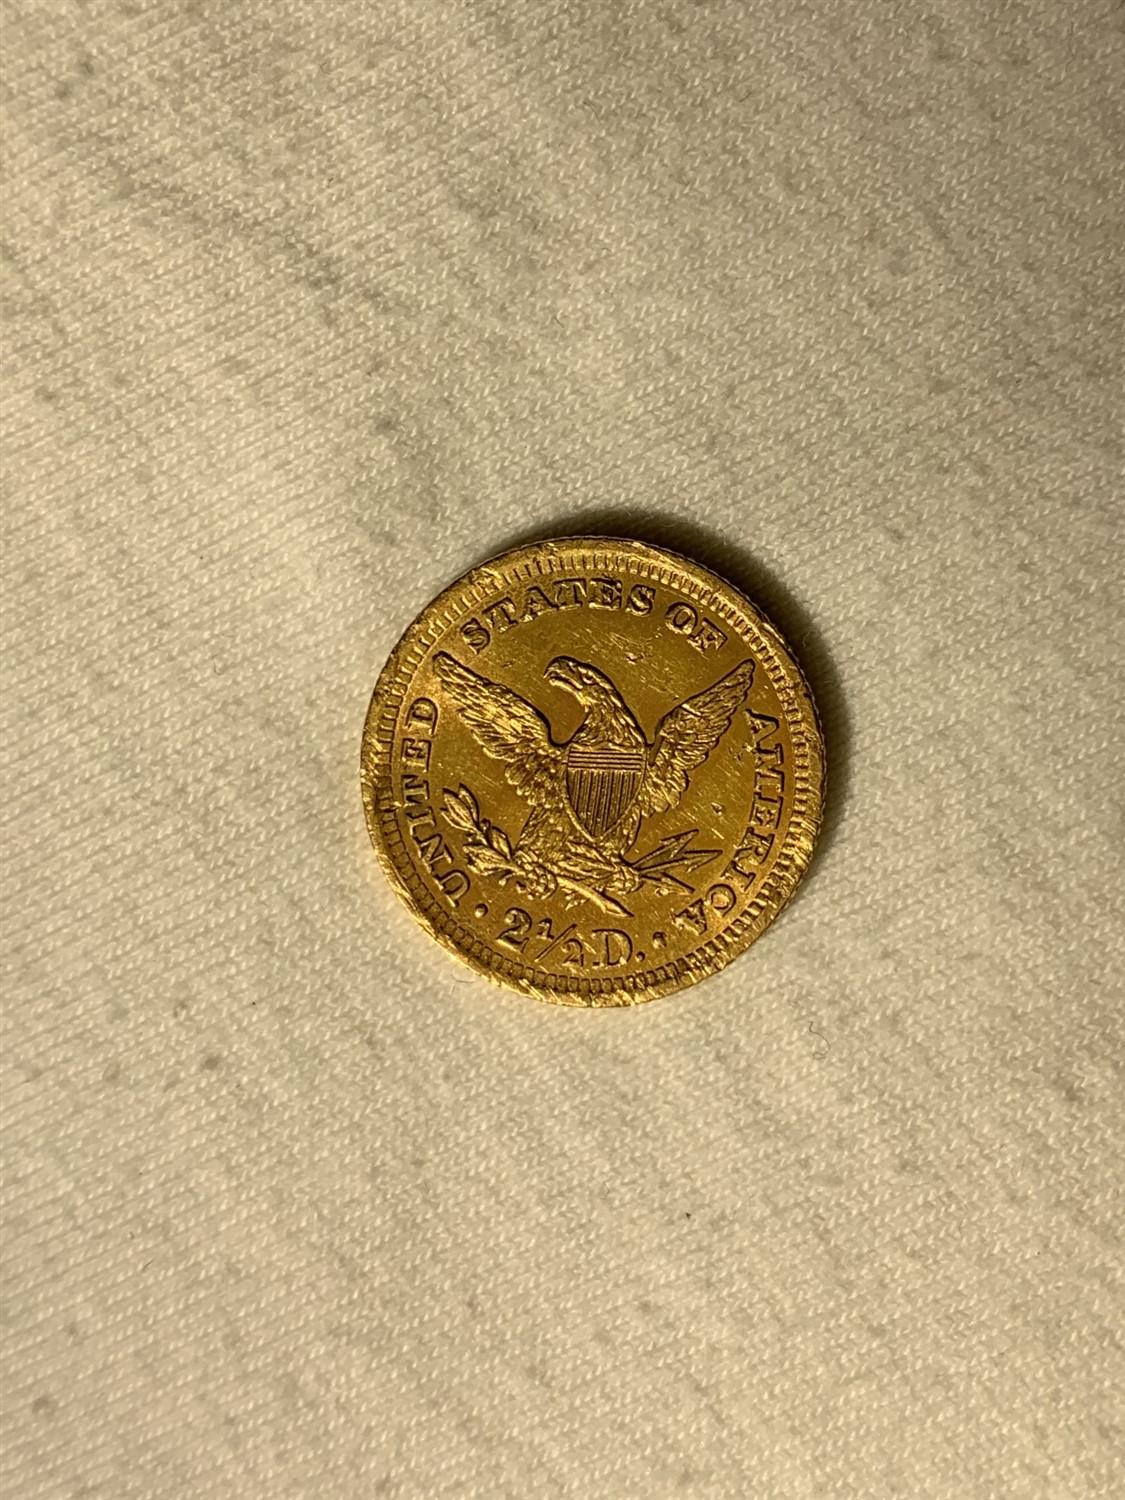 1901 $2.50 Liberty Gold Quarter Eagle Coin